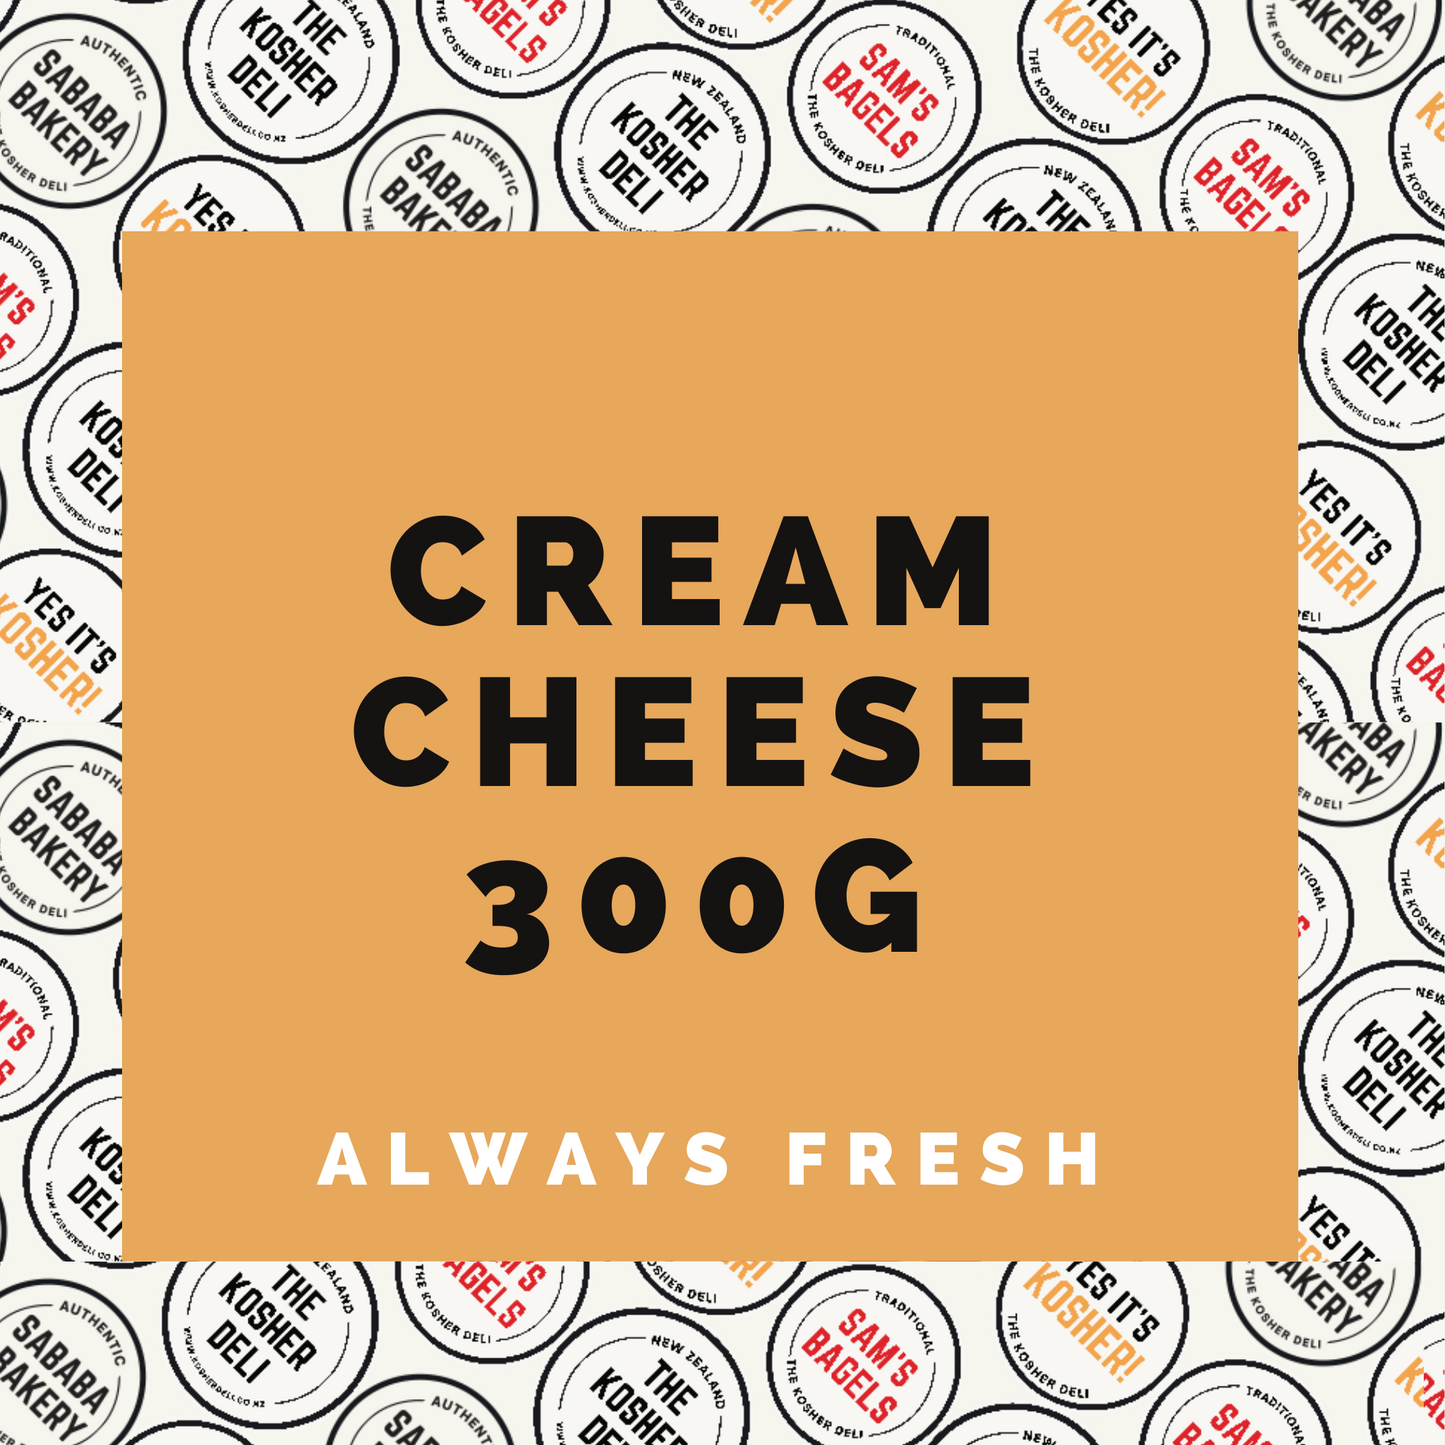 Cream cheese 300g